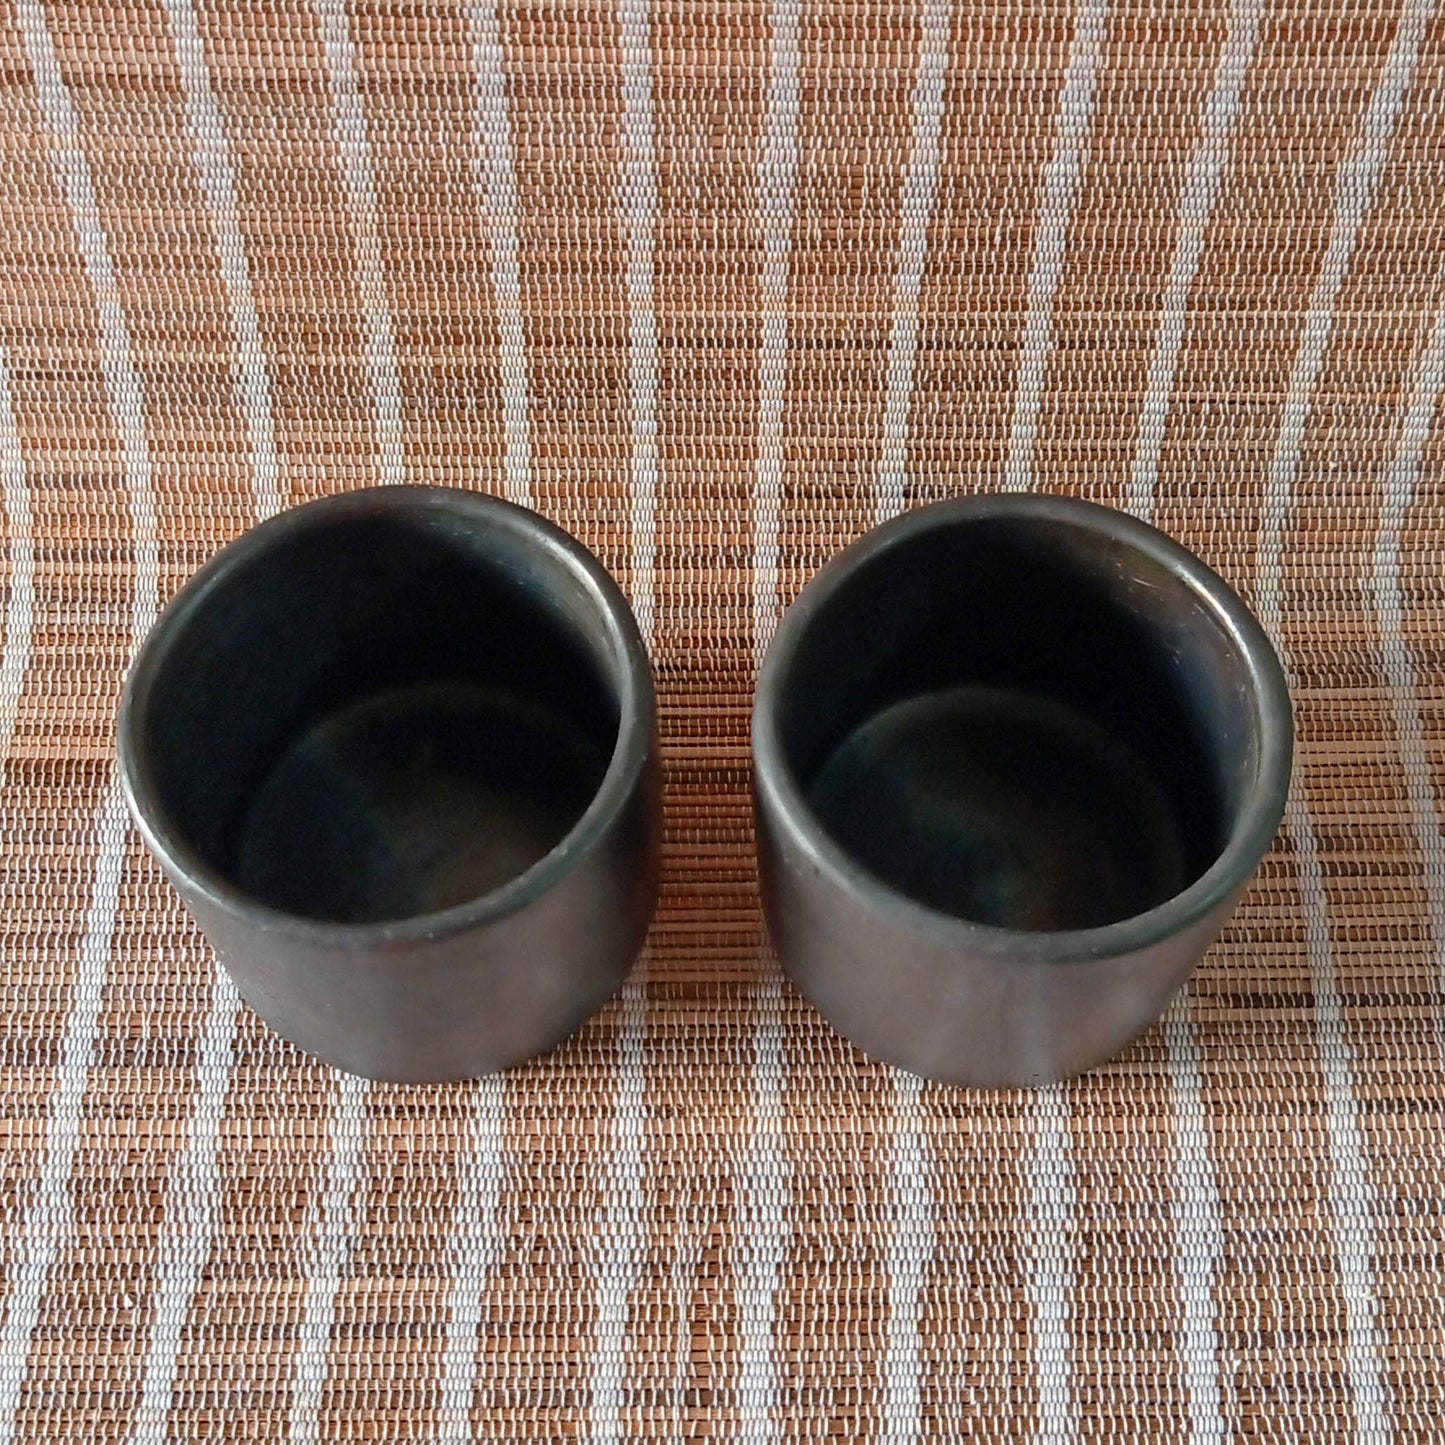 Longpi Black Pottery Tumblers Small Set of 2